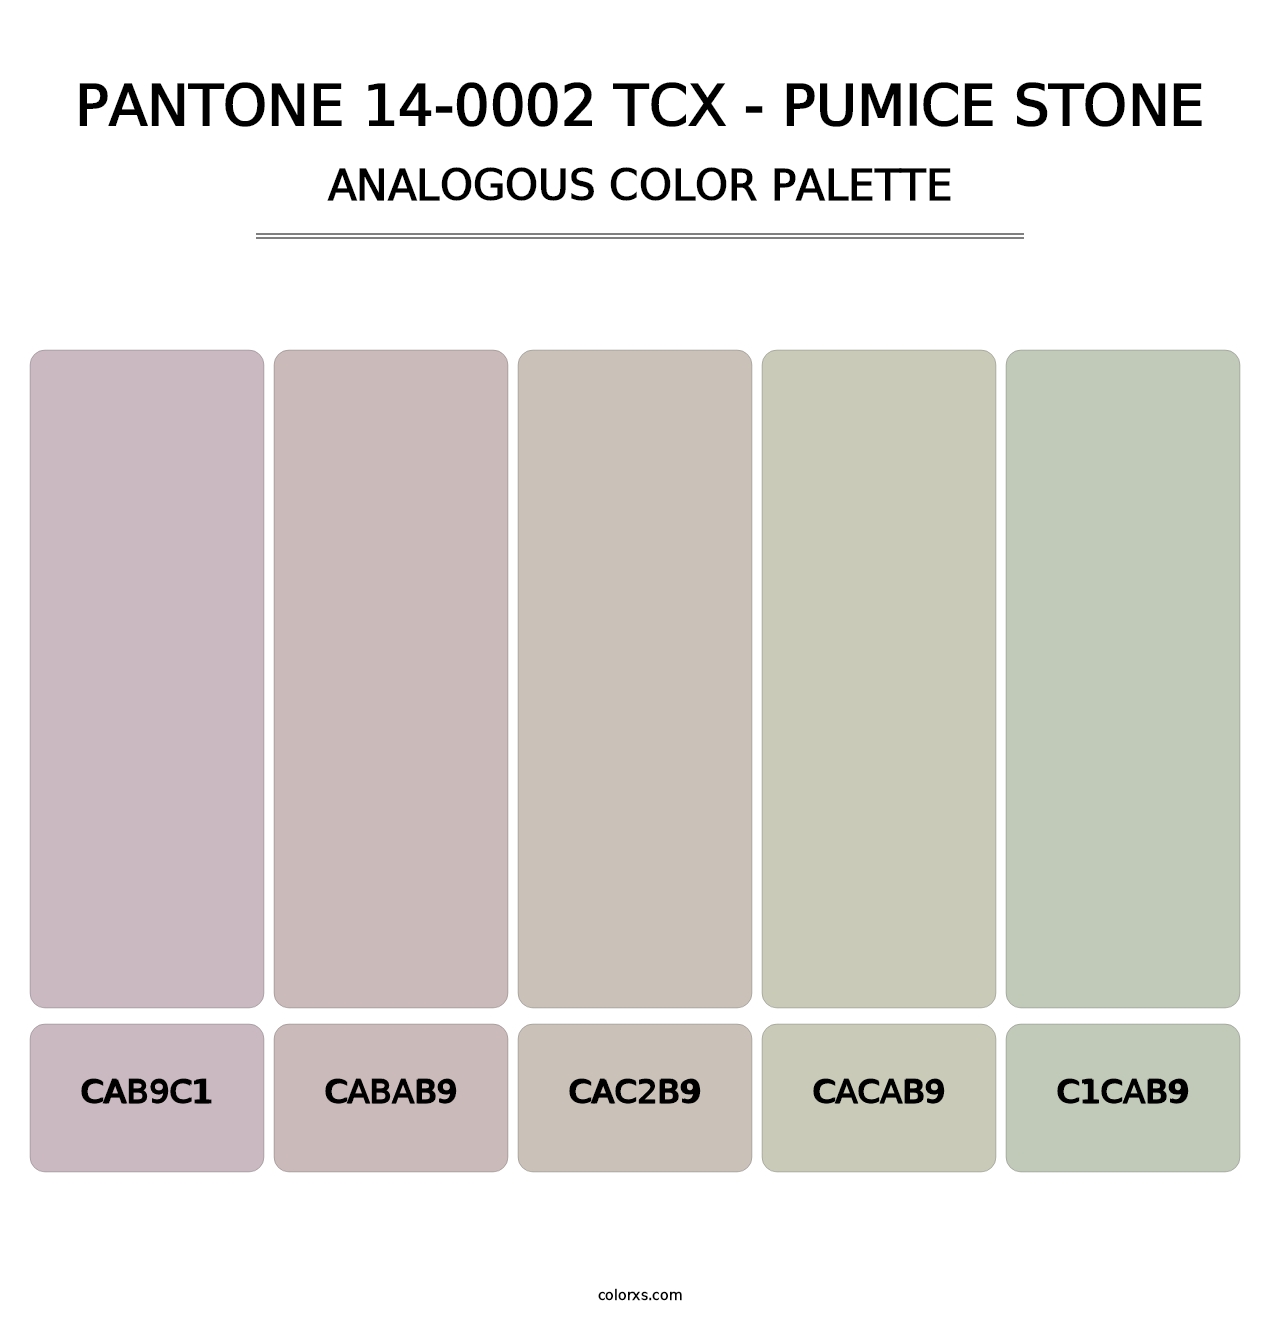 PANTONE 14-0002 TCX - Pumice Stone - Analogous Color Palette